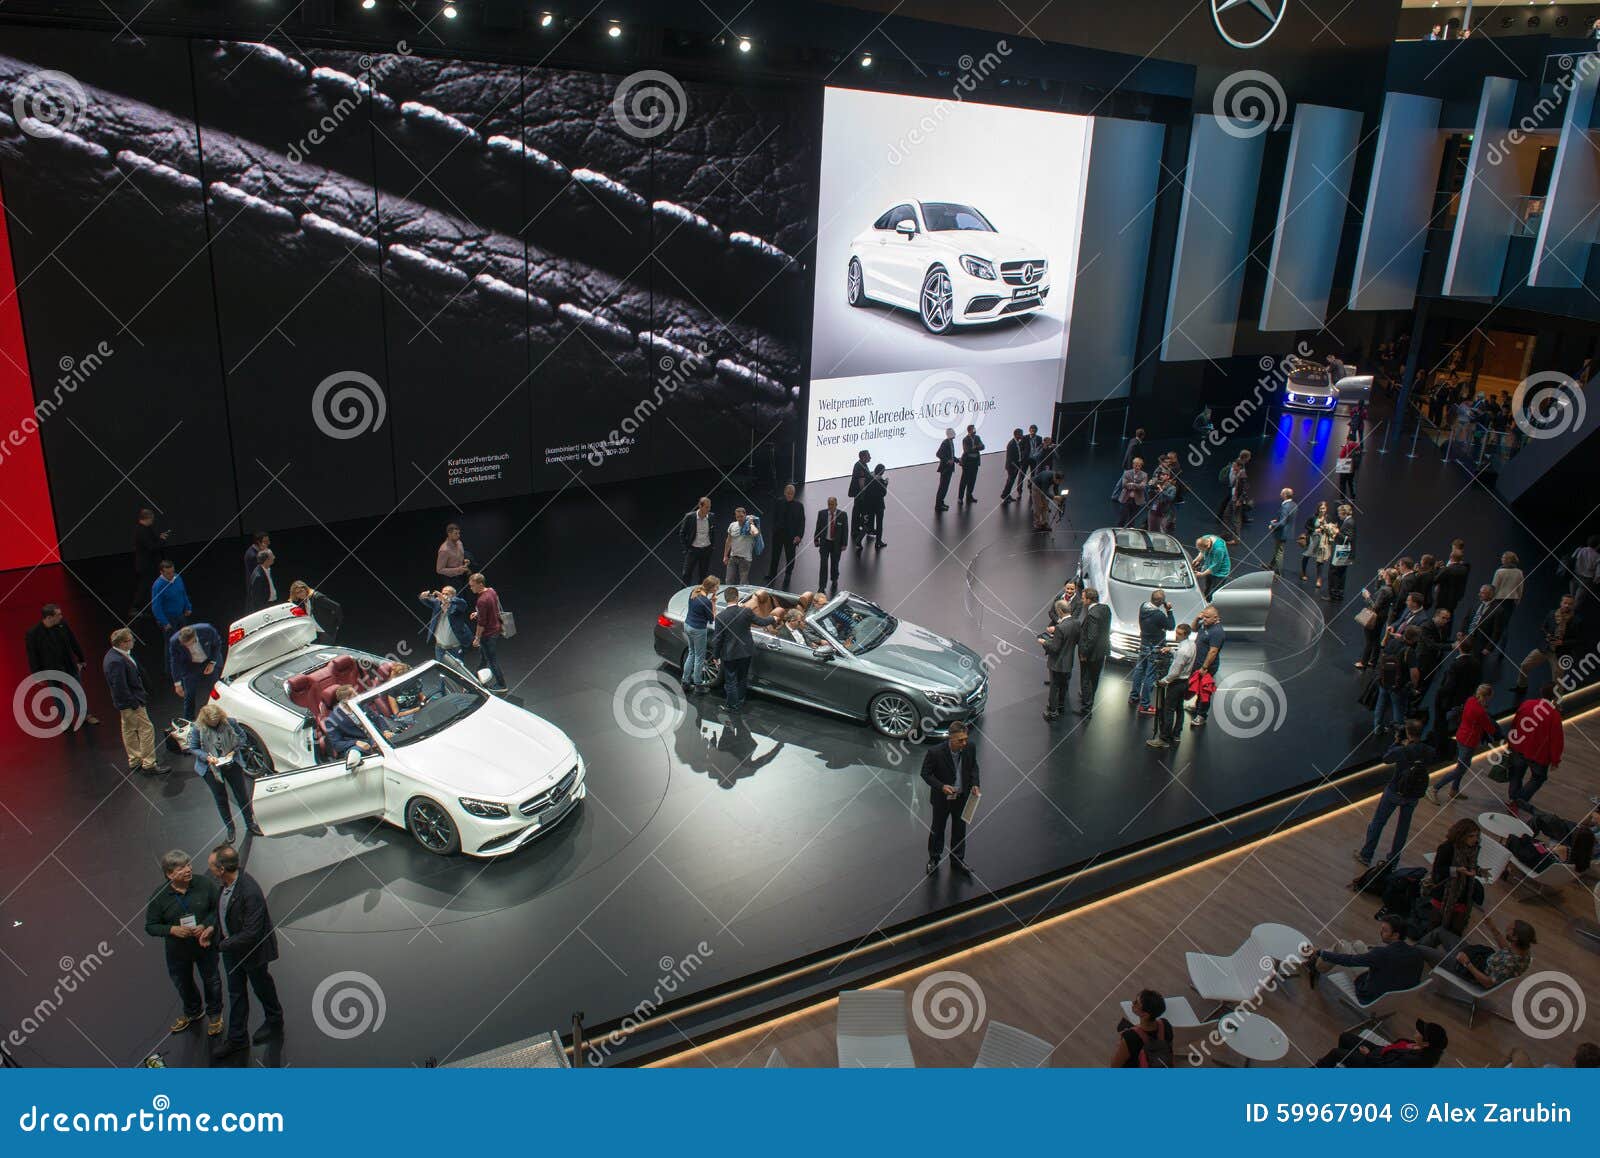 Mercedes Benz Forum Vogelperspektive Redaktionelles Stockbild Bild Von Lebensstil Modern 59967904